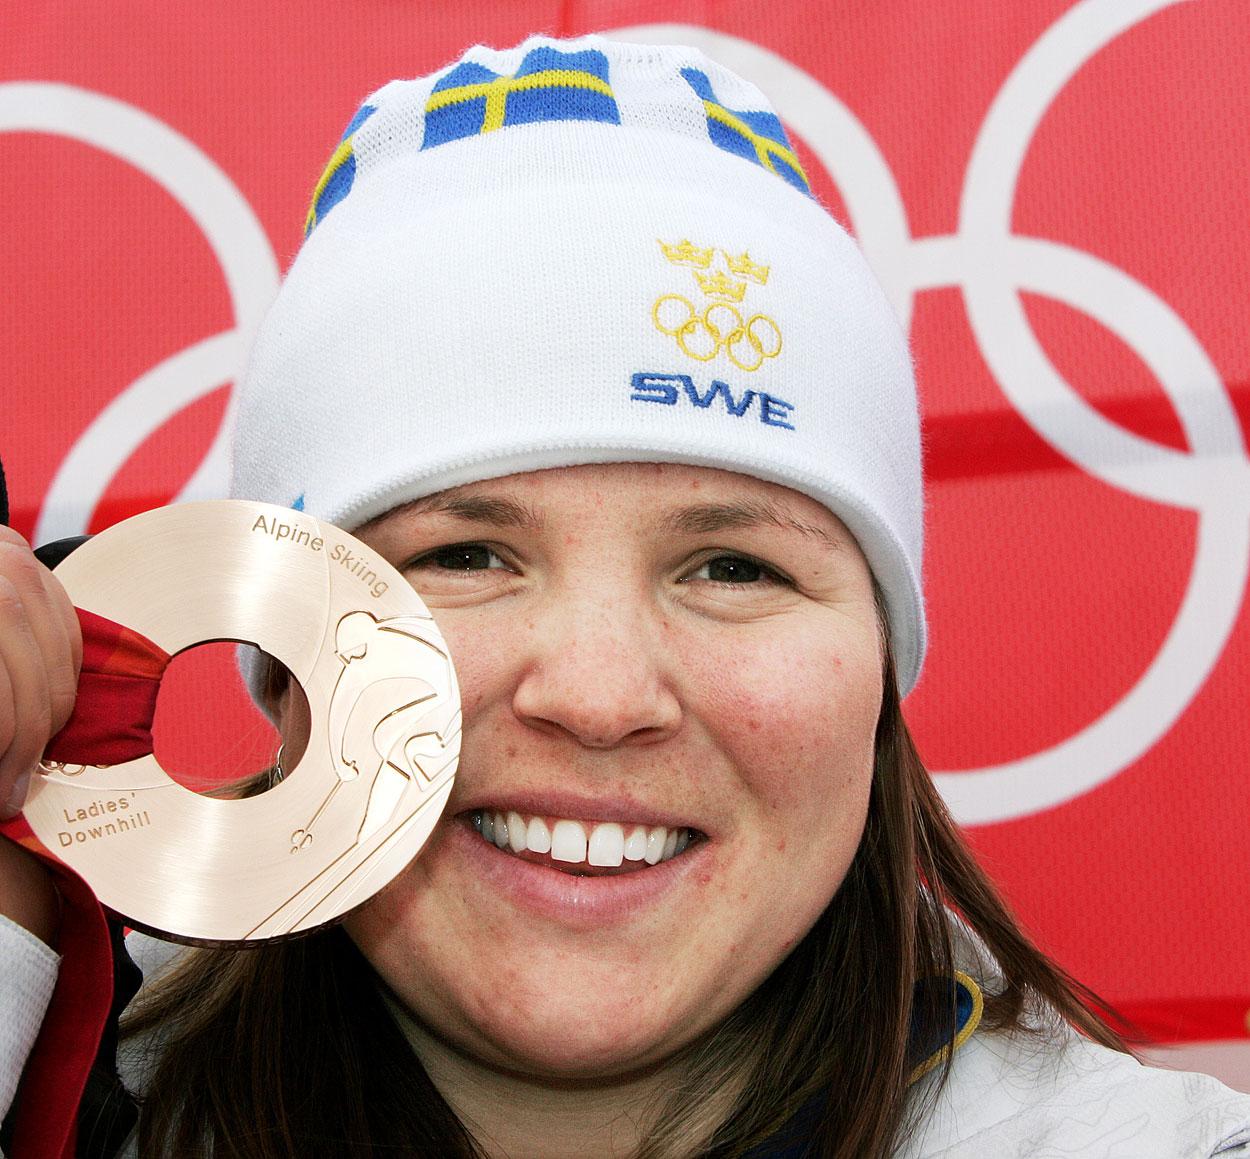 2006 Anja vinner dessutom två brons i OS i Turin, ett i störtlopp och ett i kombination.